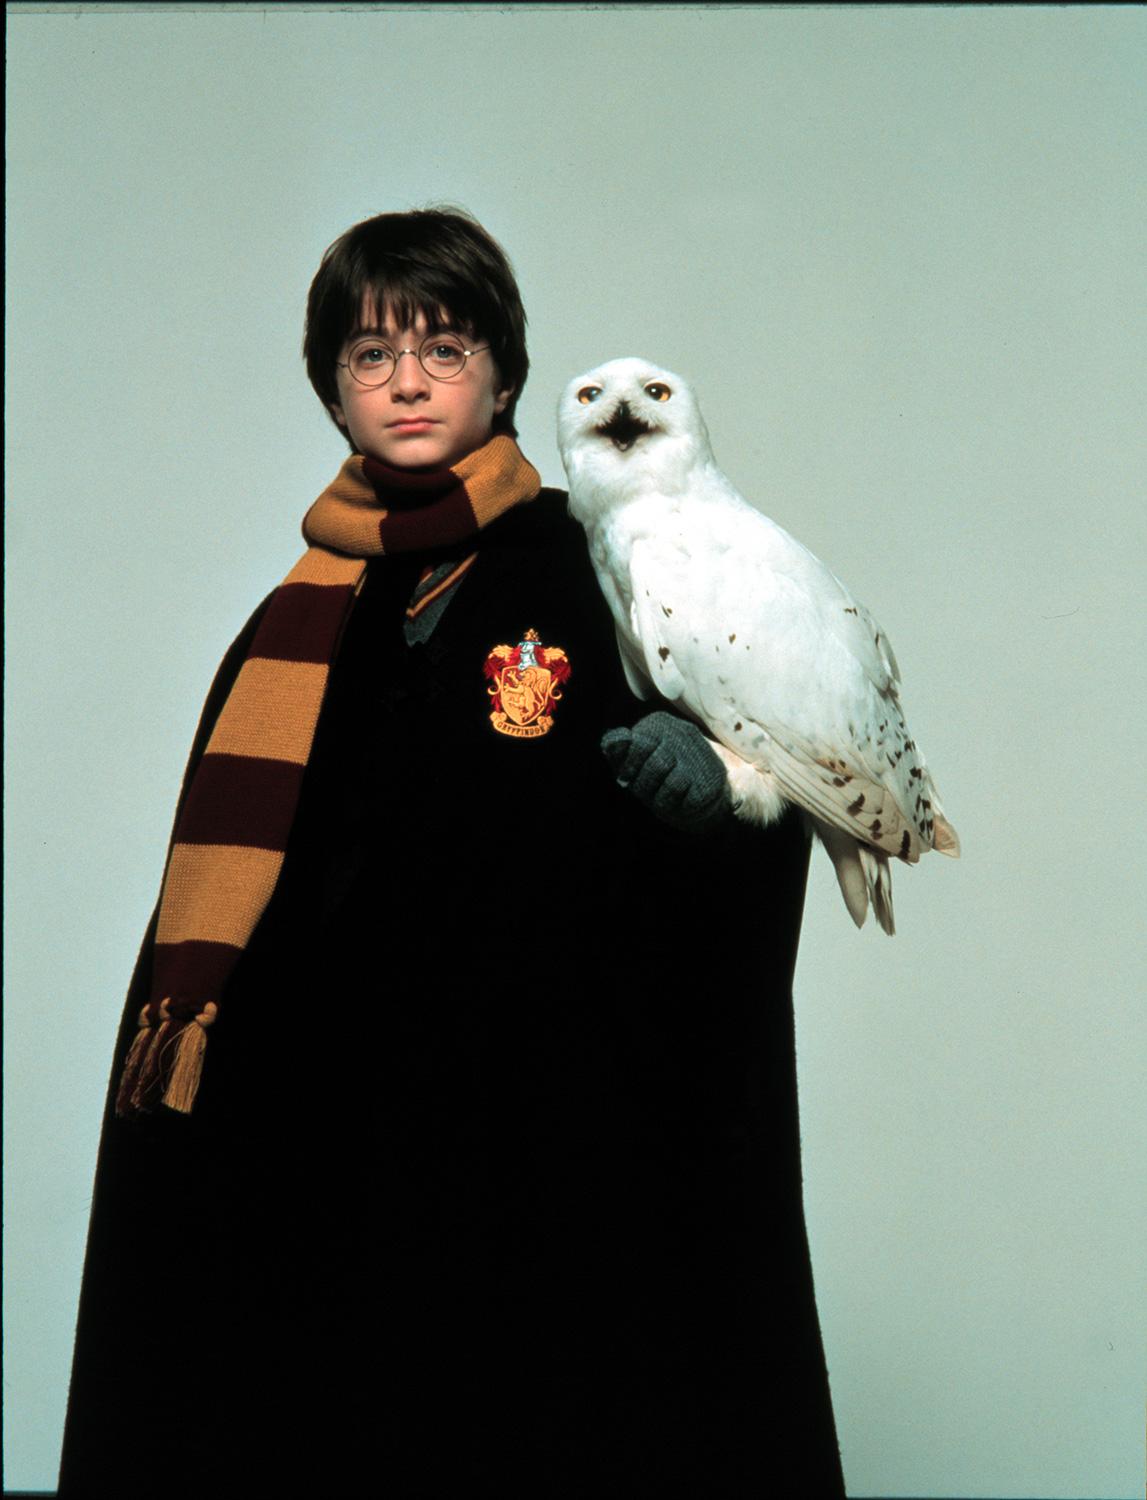 Glömd: Ugglan Hedwig, namne med Harry Potters dito (bilden).